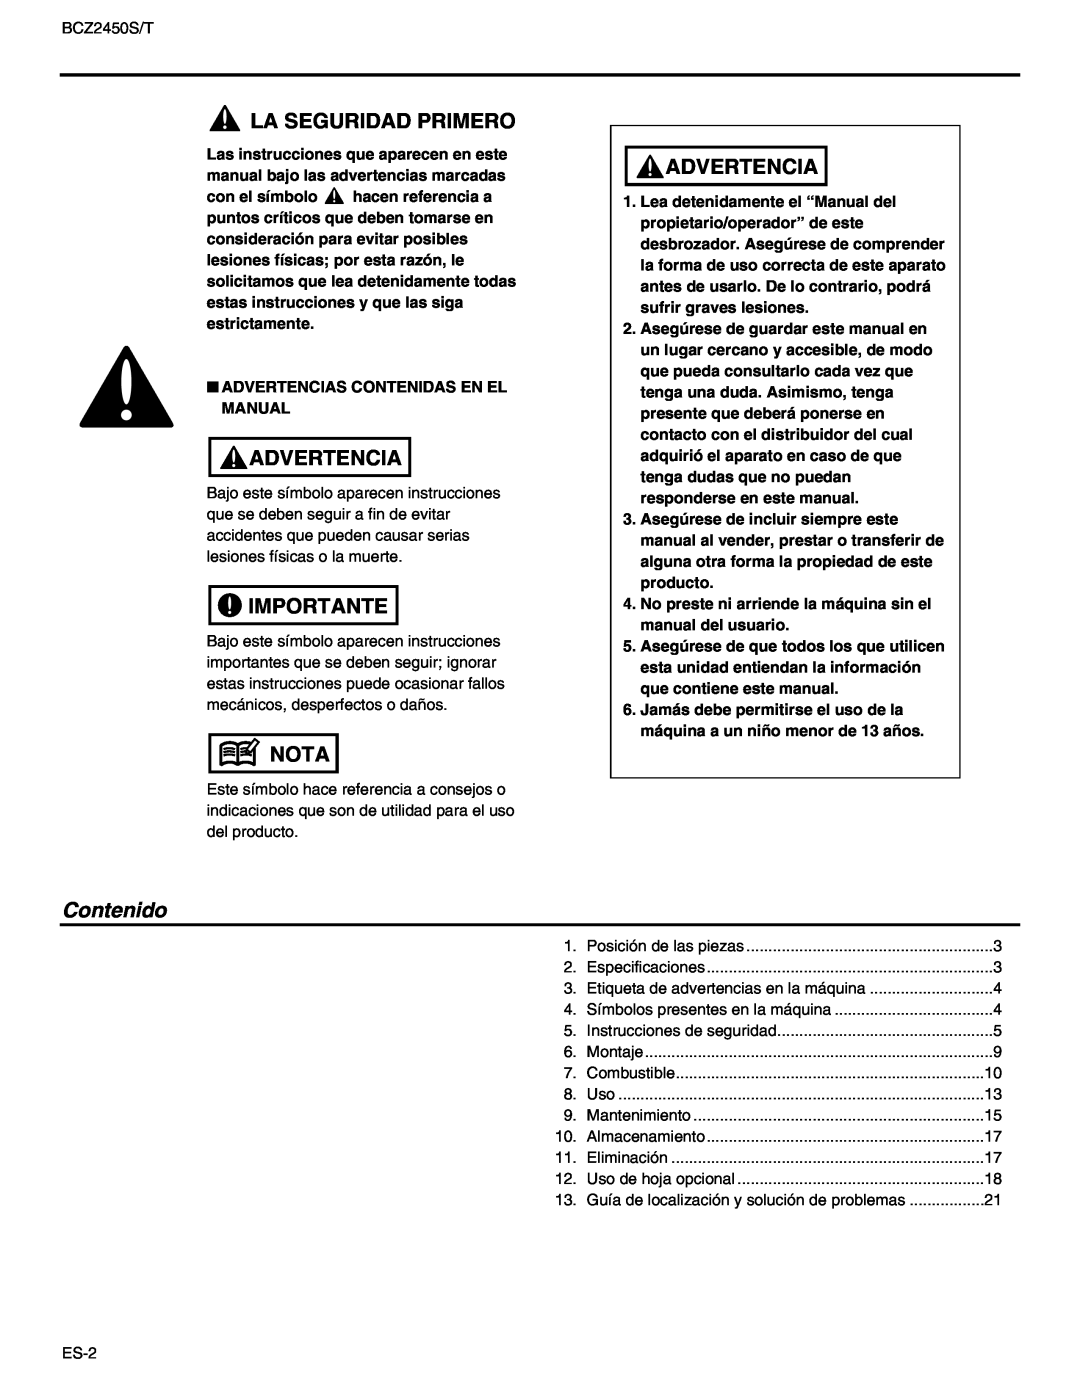 RedMax BCZ2450T, BCZ2450S manual La Seguridad Primero, Advertencia, Importante, Nota, Contenido 